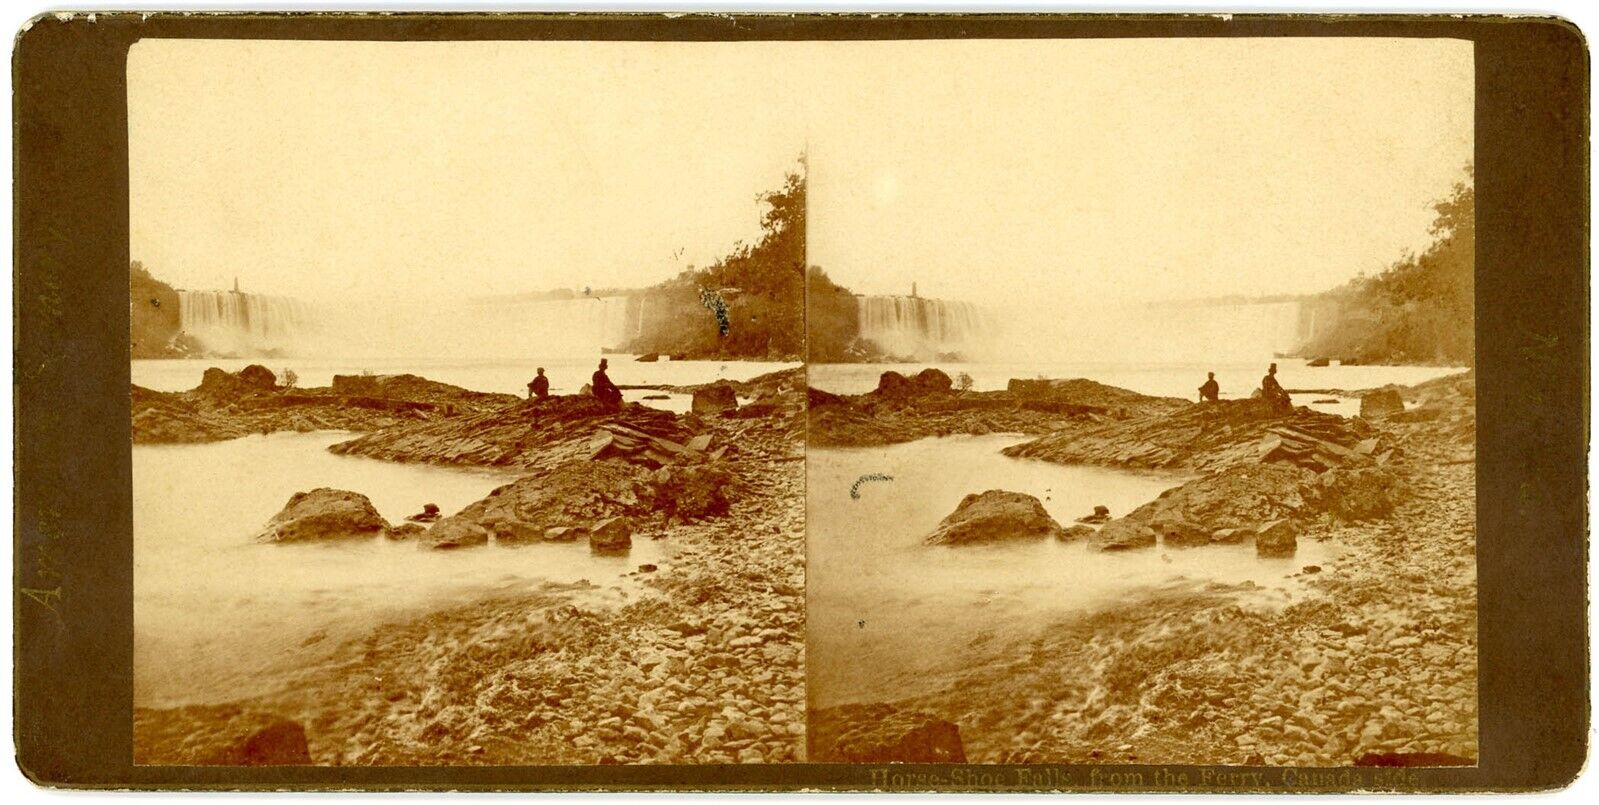 CANADA SV - Ontario - Niagara - Horsehoe Fall - 1880s